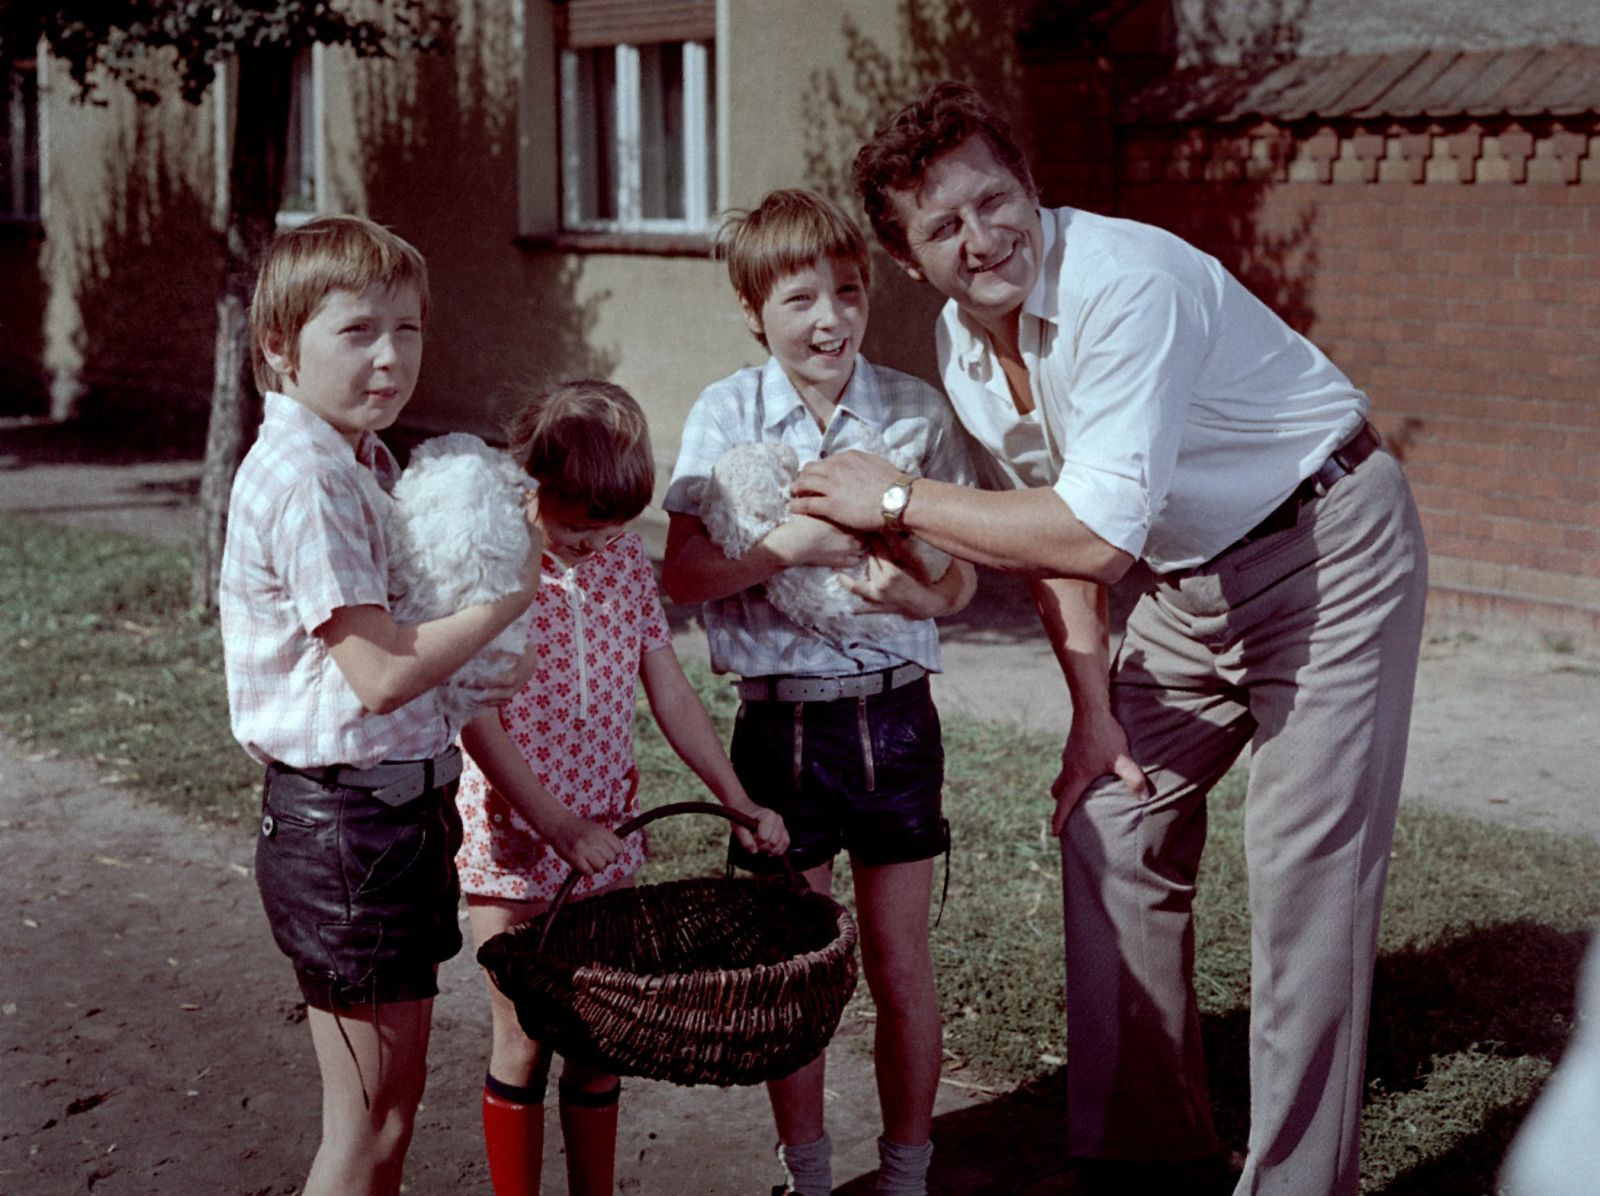 Familienfotografie in warmen Farbtönen, wie sie typisch für die 1970er-Jahre sind